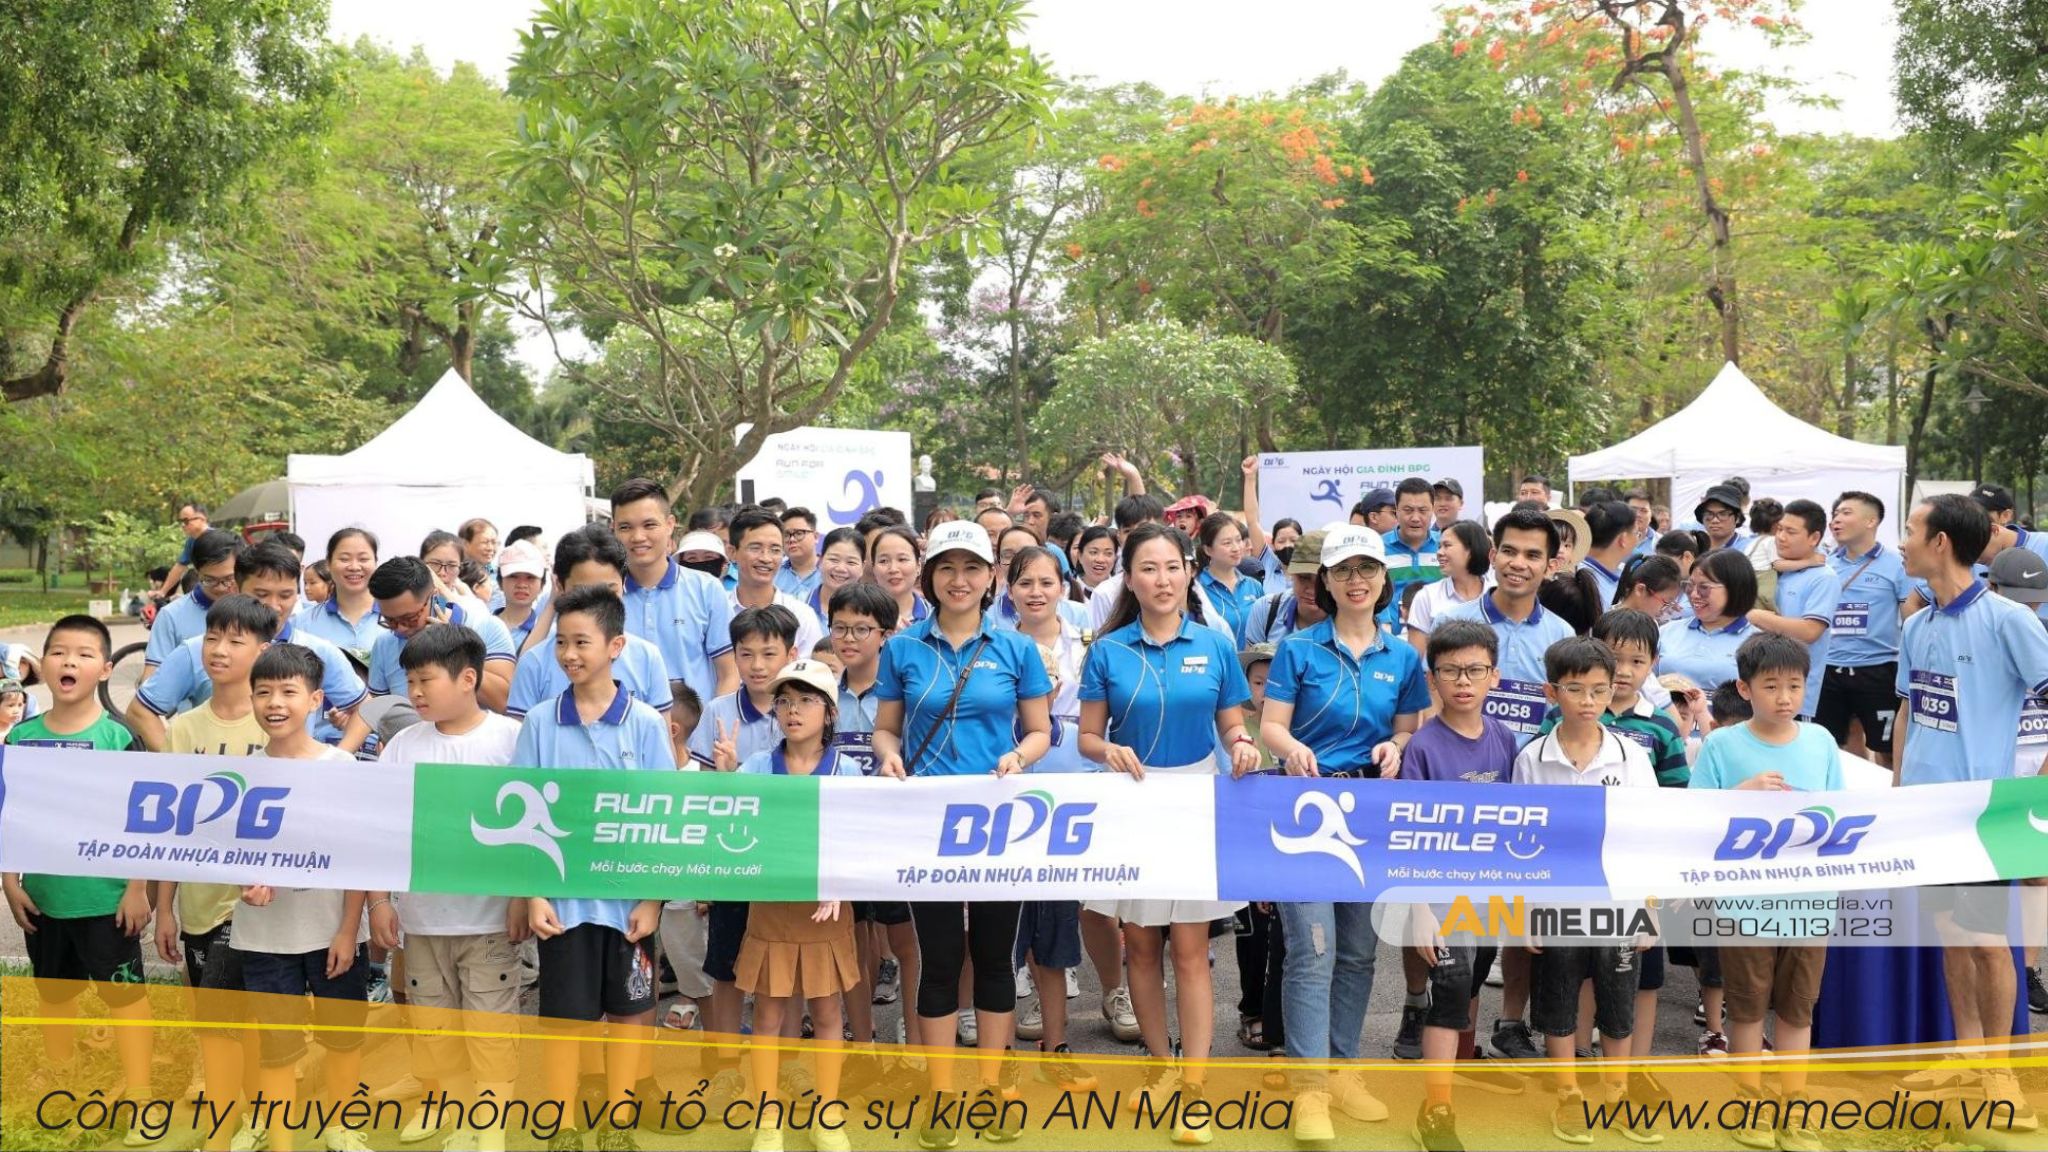 Giải chạy “Ngày hội gia đình BPG – Run for smile” kết nối các thành viên tại Tập đoàn nhựa Bình Thuận